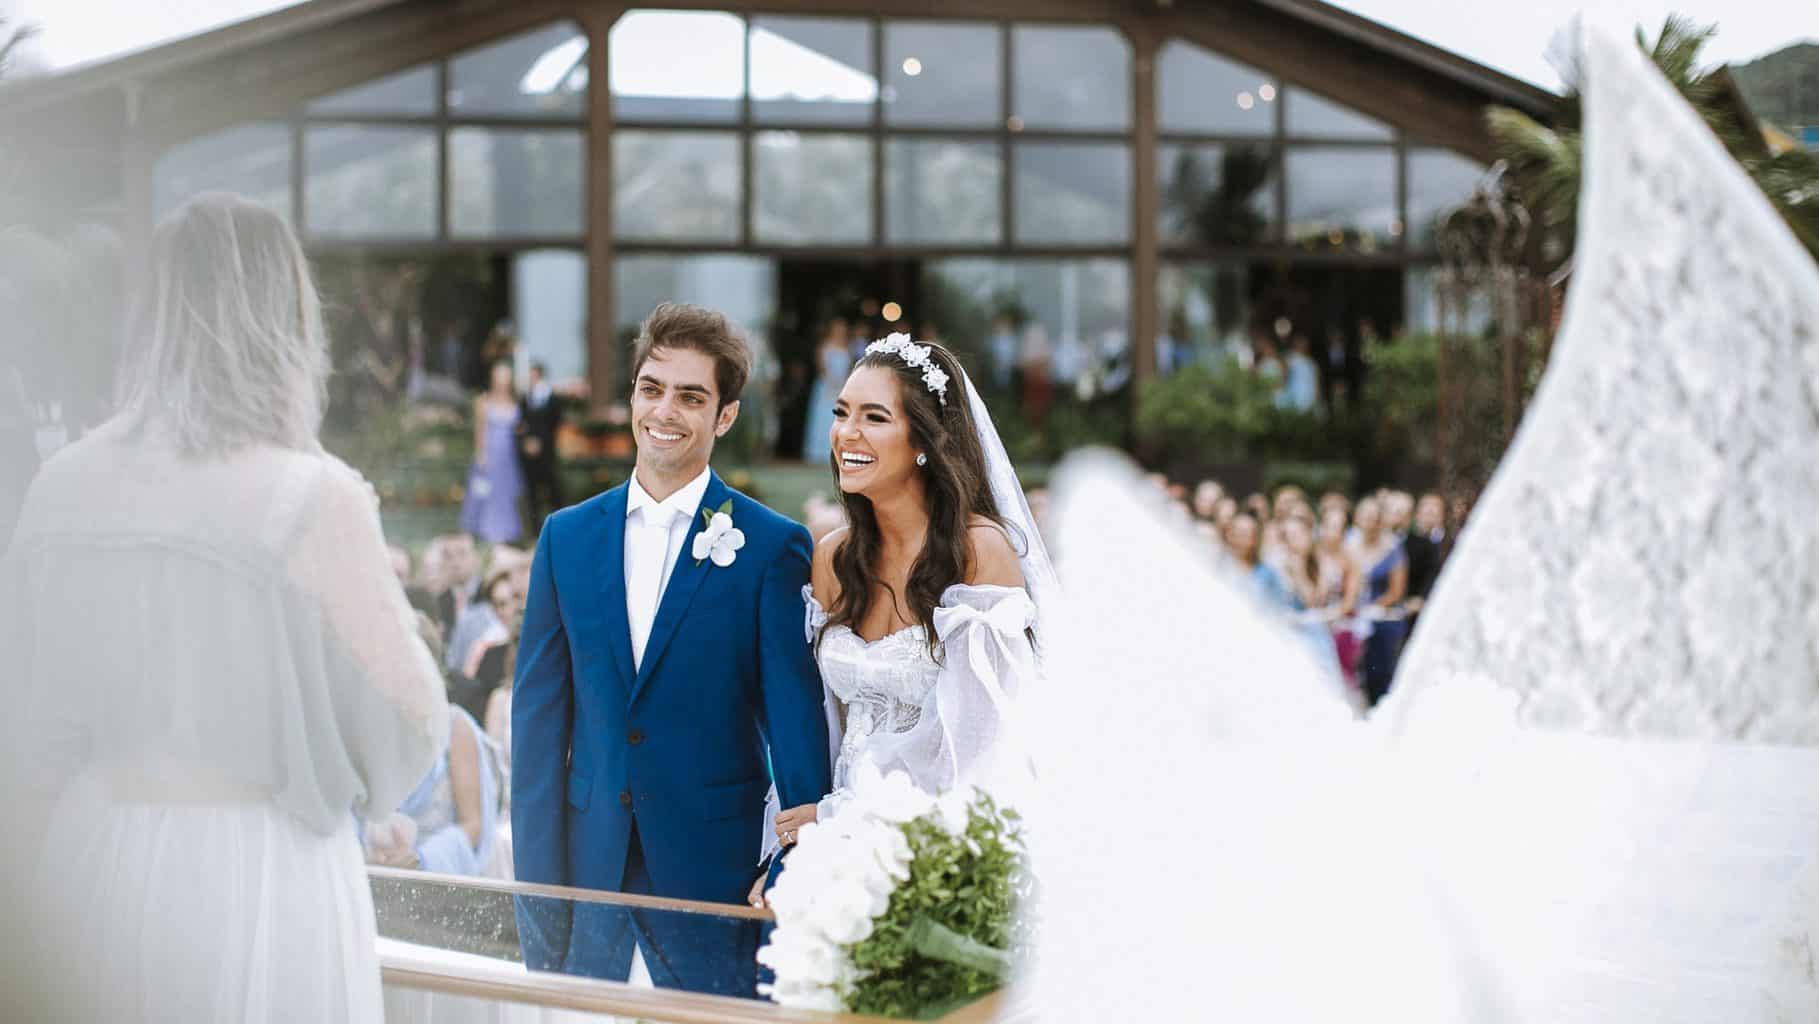 cerimonia-de-casamento-Isadora-e-Lucas-Estaleiro-Guest-House-The-Alms-Brand-Fotografia-0898-scaled